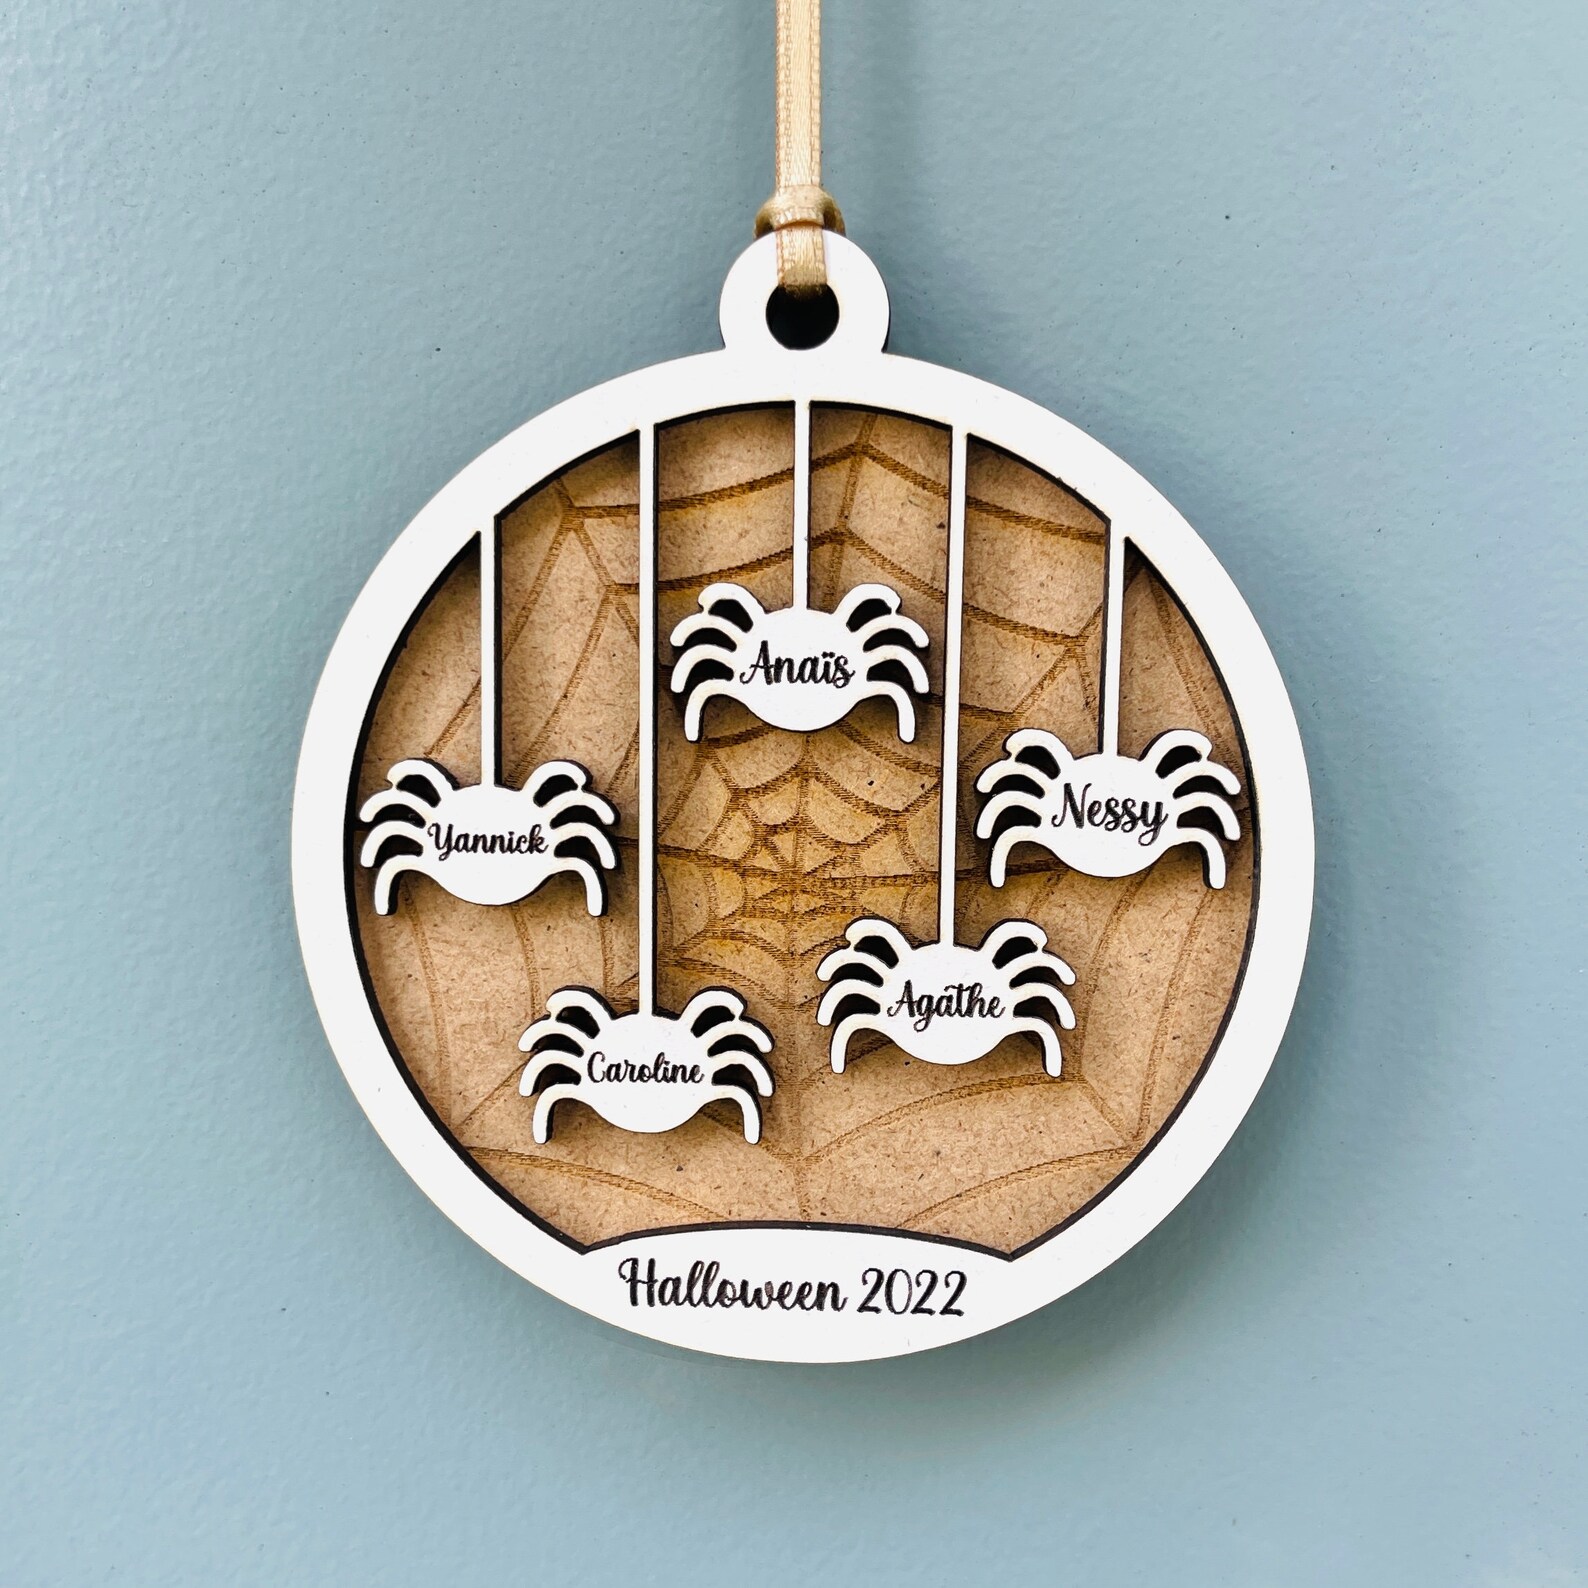 Décoration en bois pour Halloween en relief, idée cadeau pour fêter halloween en famille ou entre amis